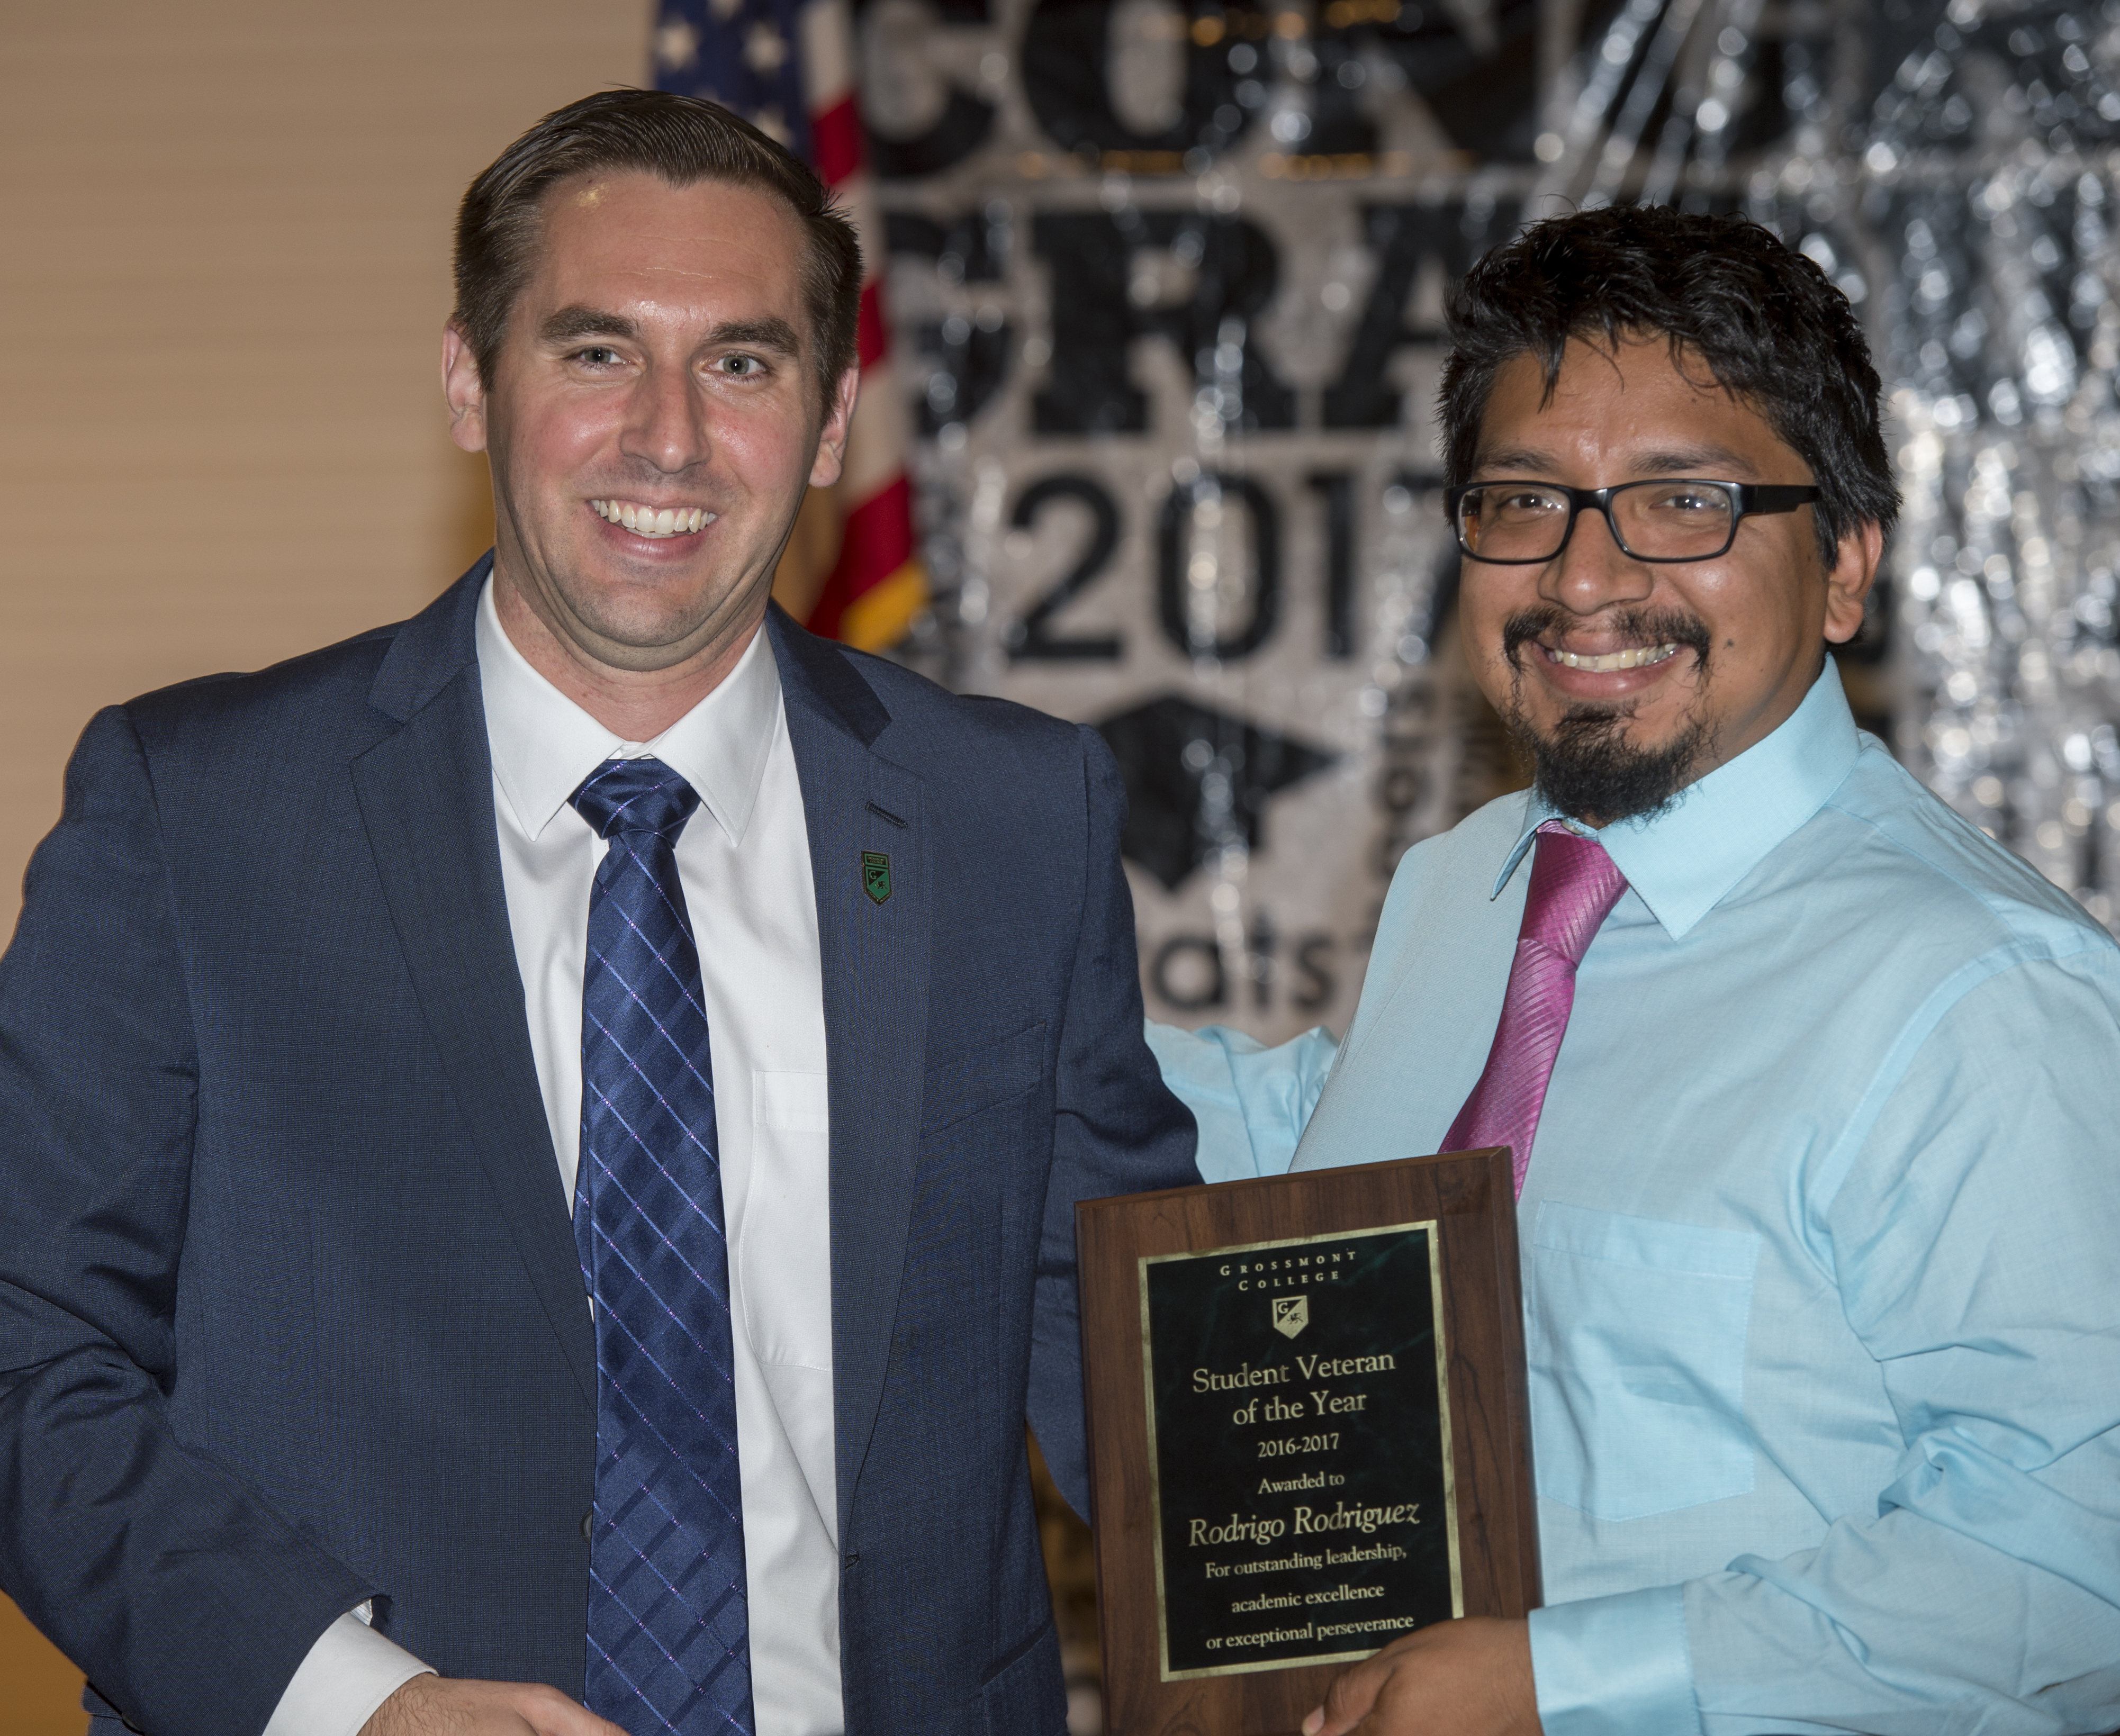 Robert Davis and 2017 Student Veteran Of the Year, Rodrigo Rodriguez